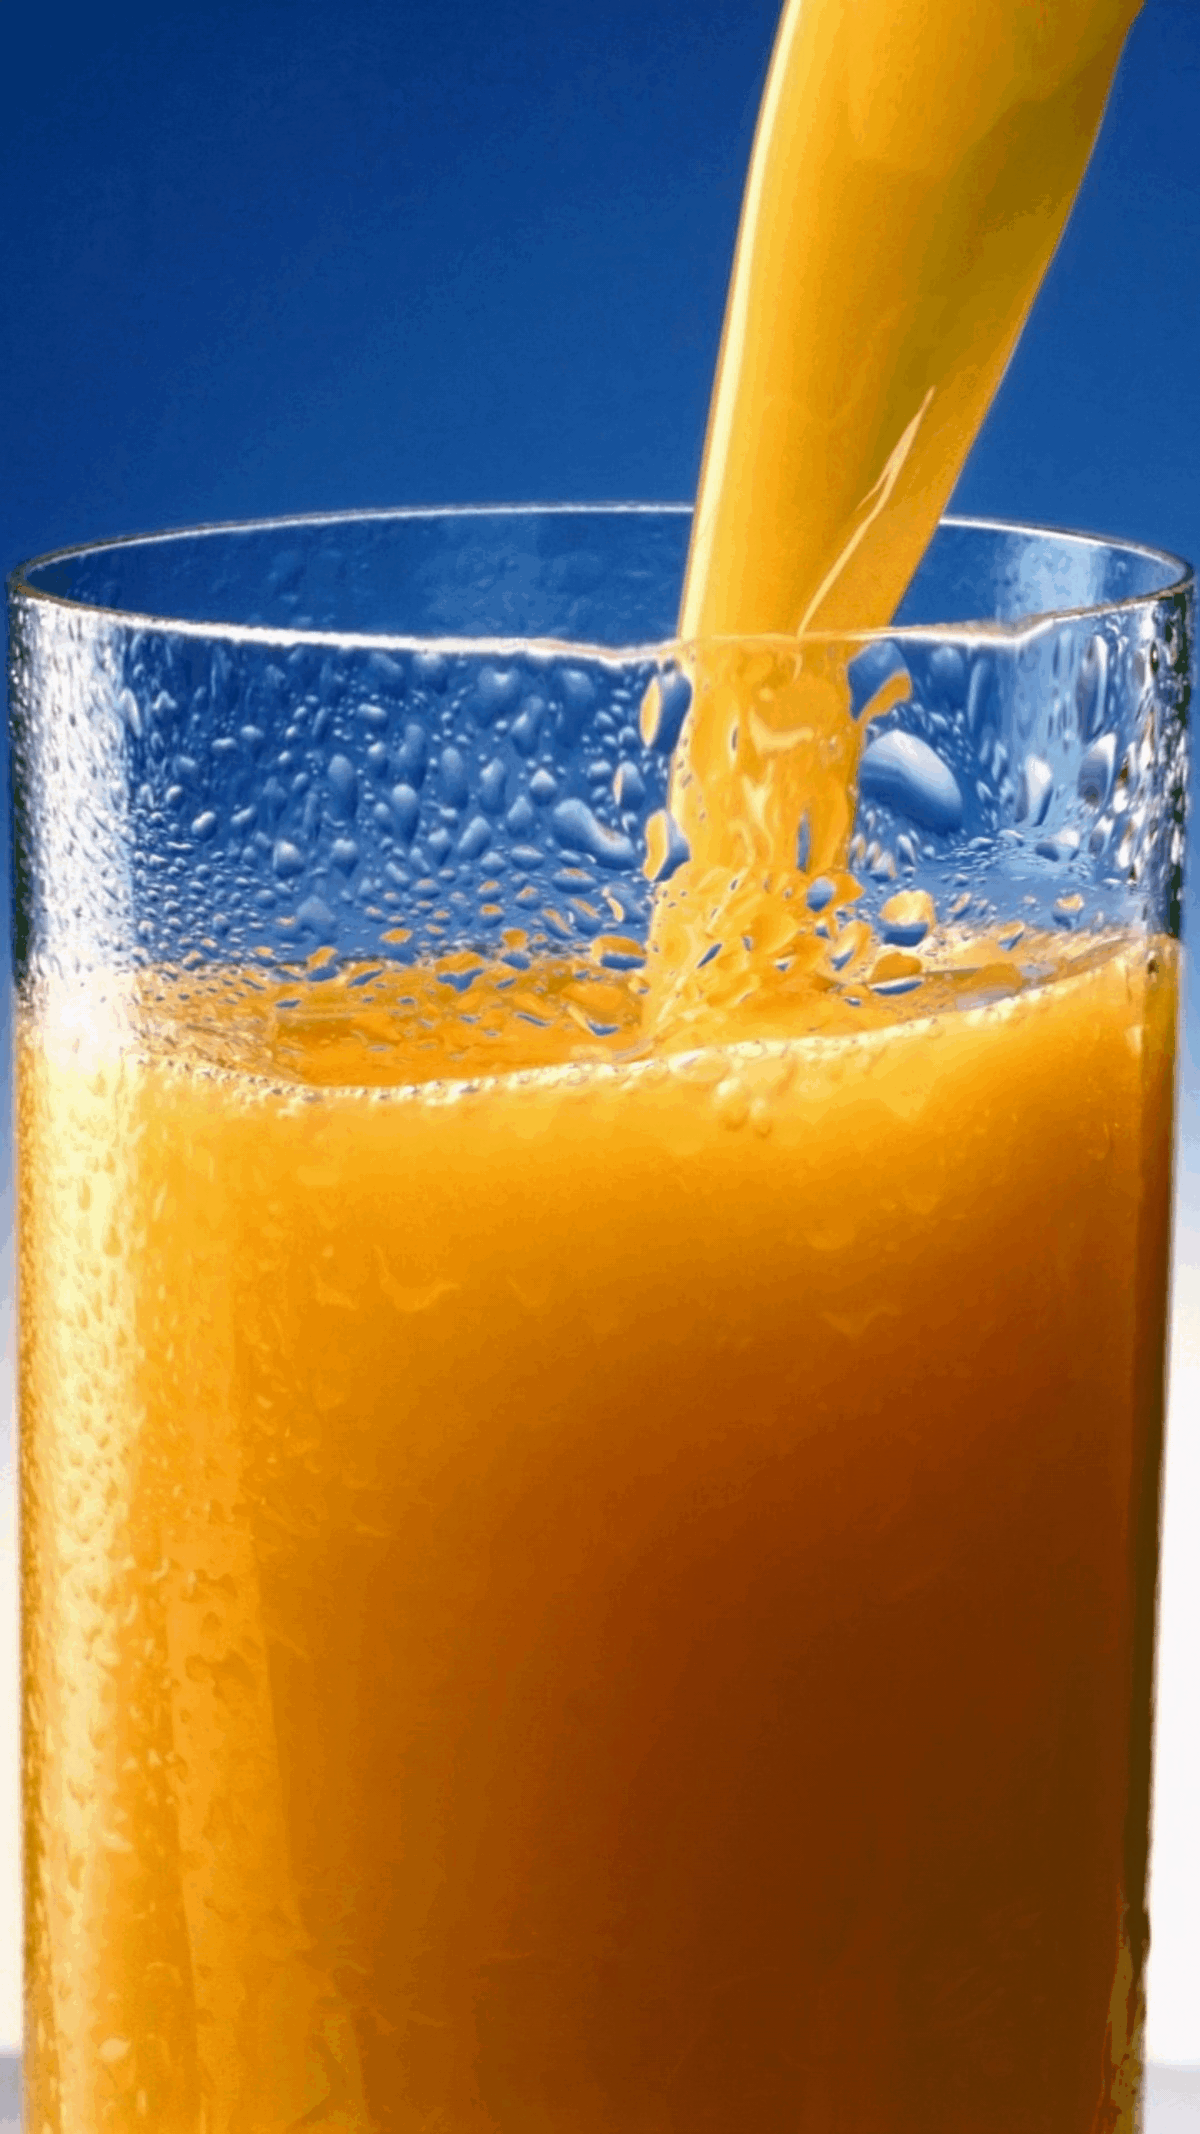 Ascorbic Acid in orange juice